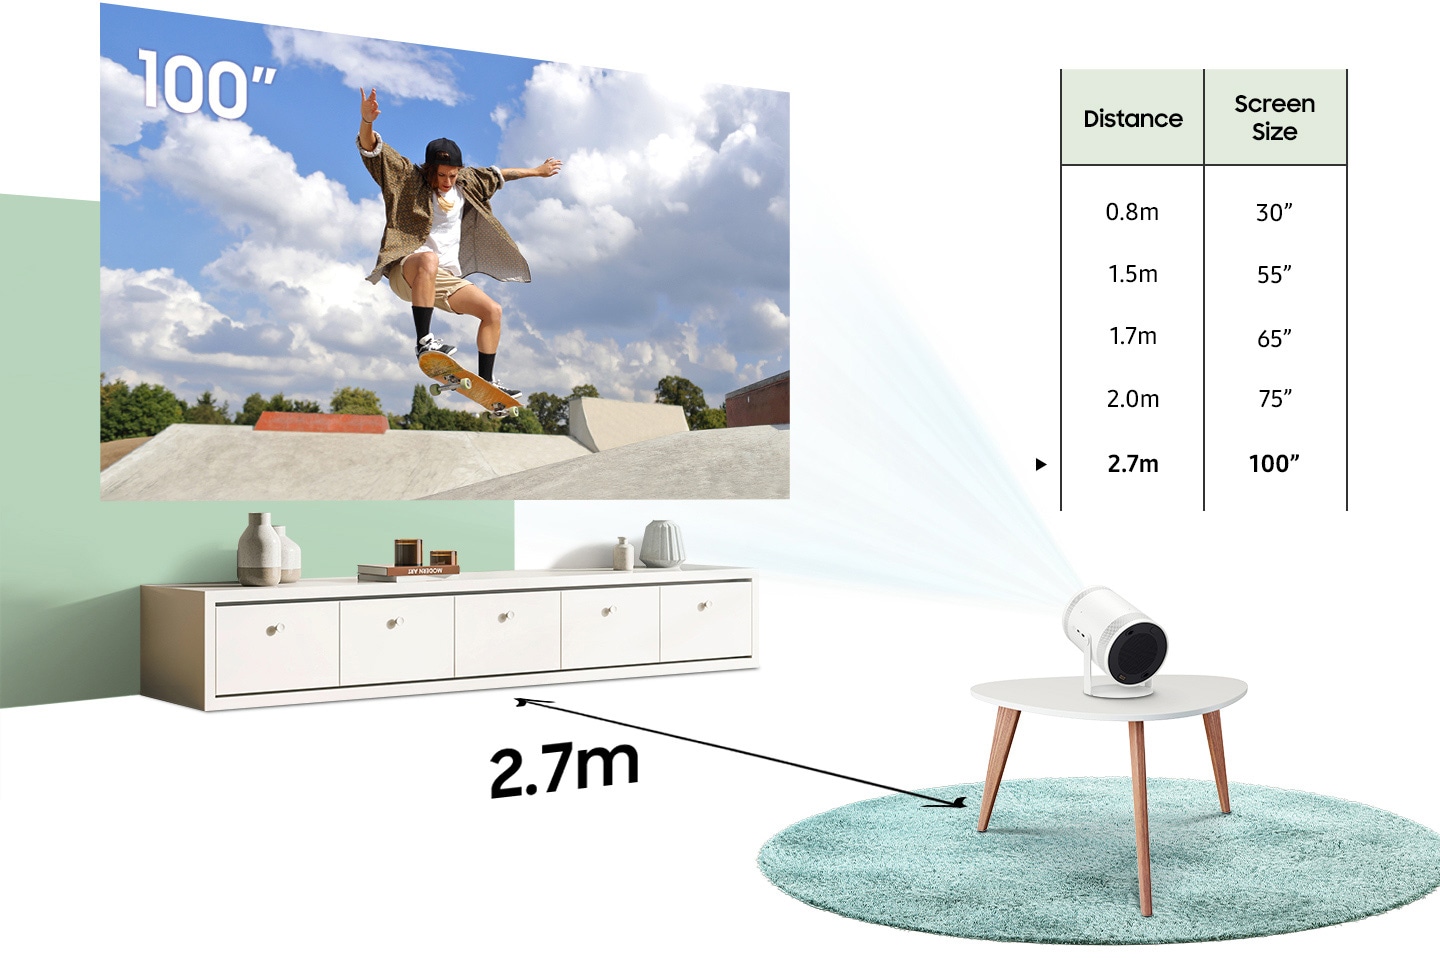  SAMSUNG Proyector portátil inteligente Freestyle FHD HDR de 30  a 100 pulgadas para cine en casa en interiores y exteriores, experiencia de  pantalla grande con sonido 360 premium con Alexa incorporado : Electrónica